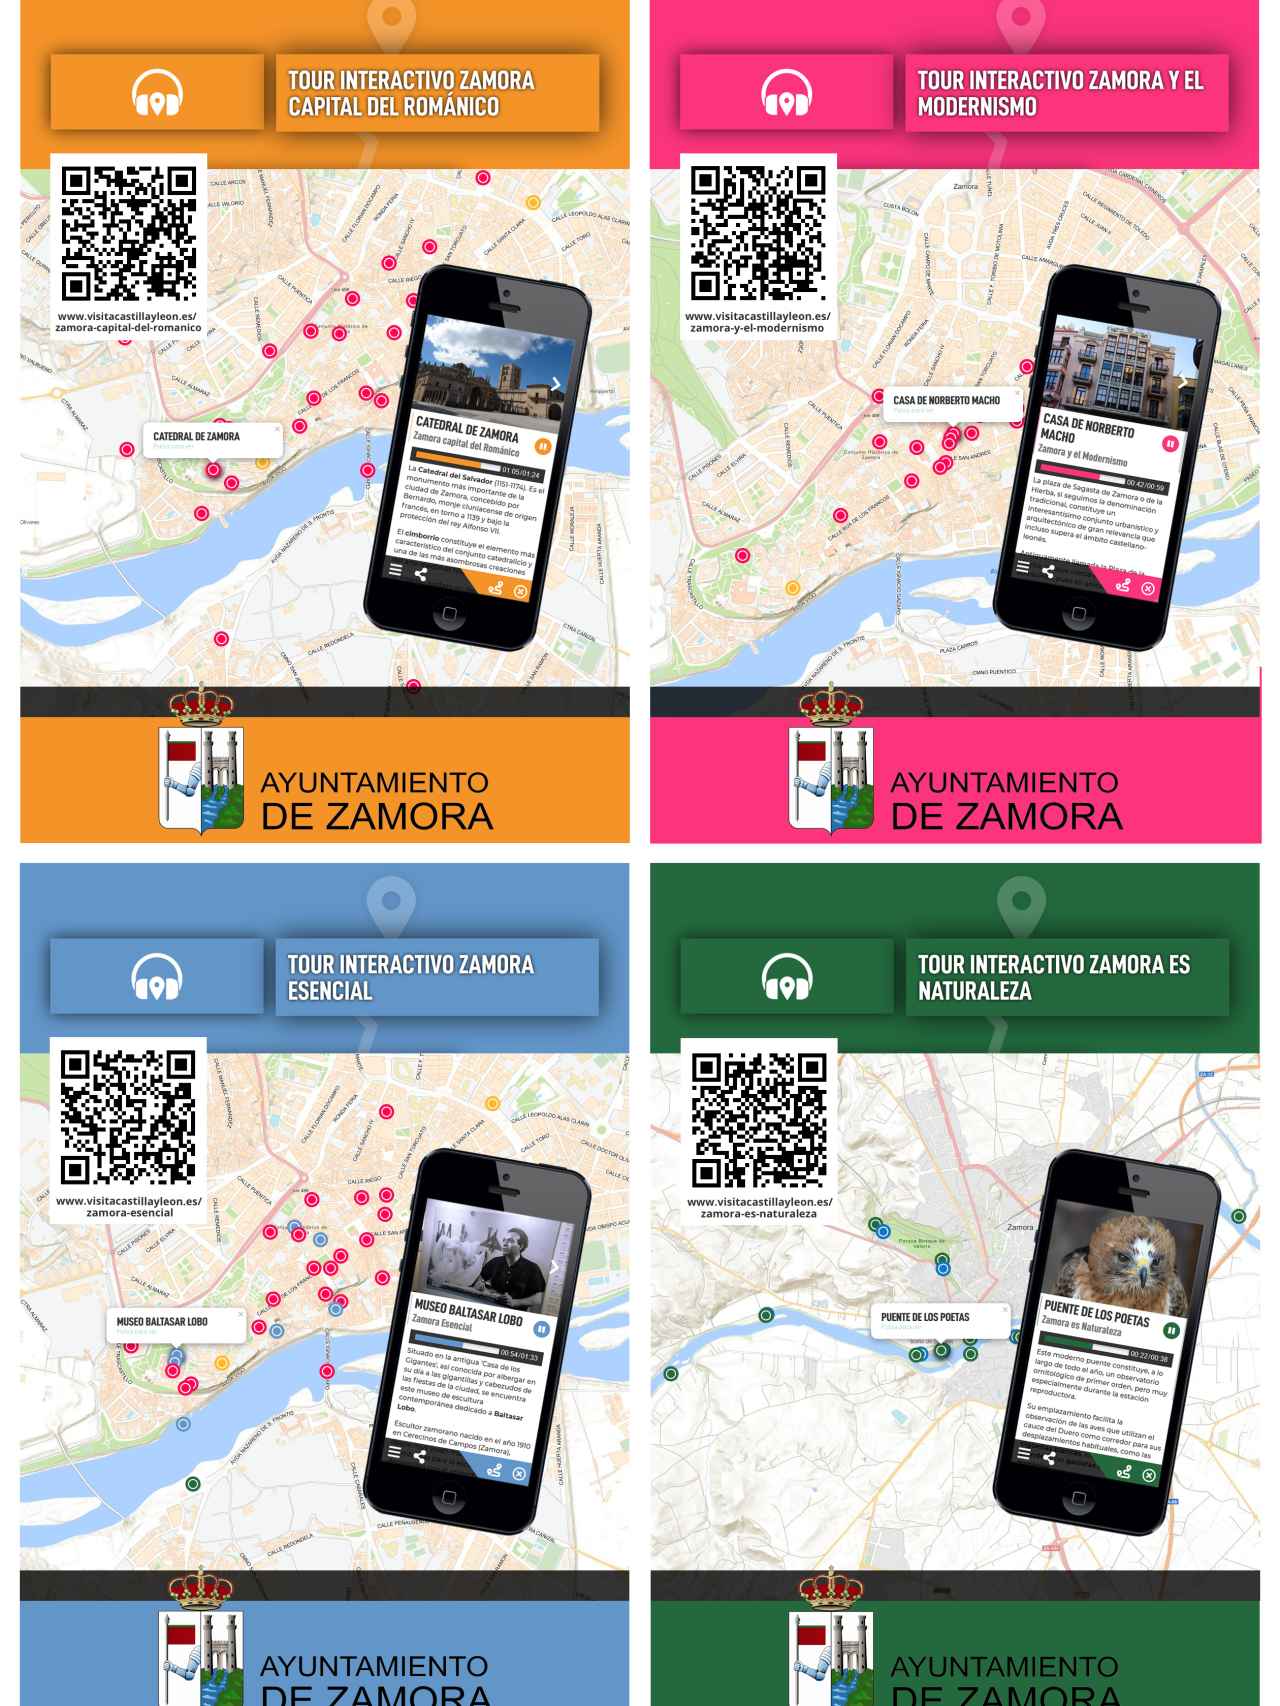 Tours interactivos en Zamora